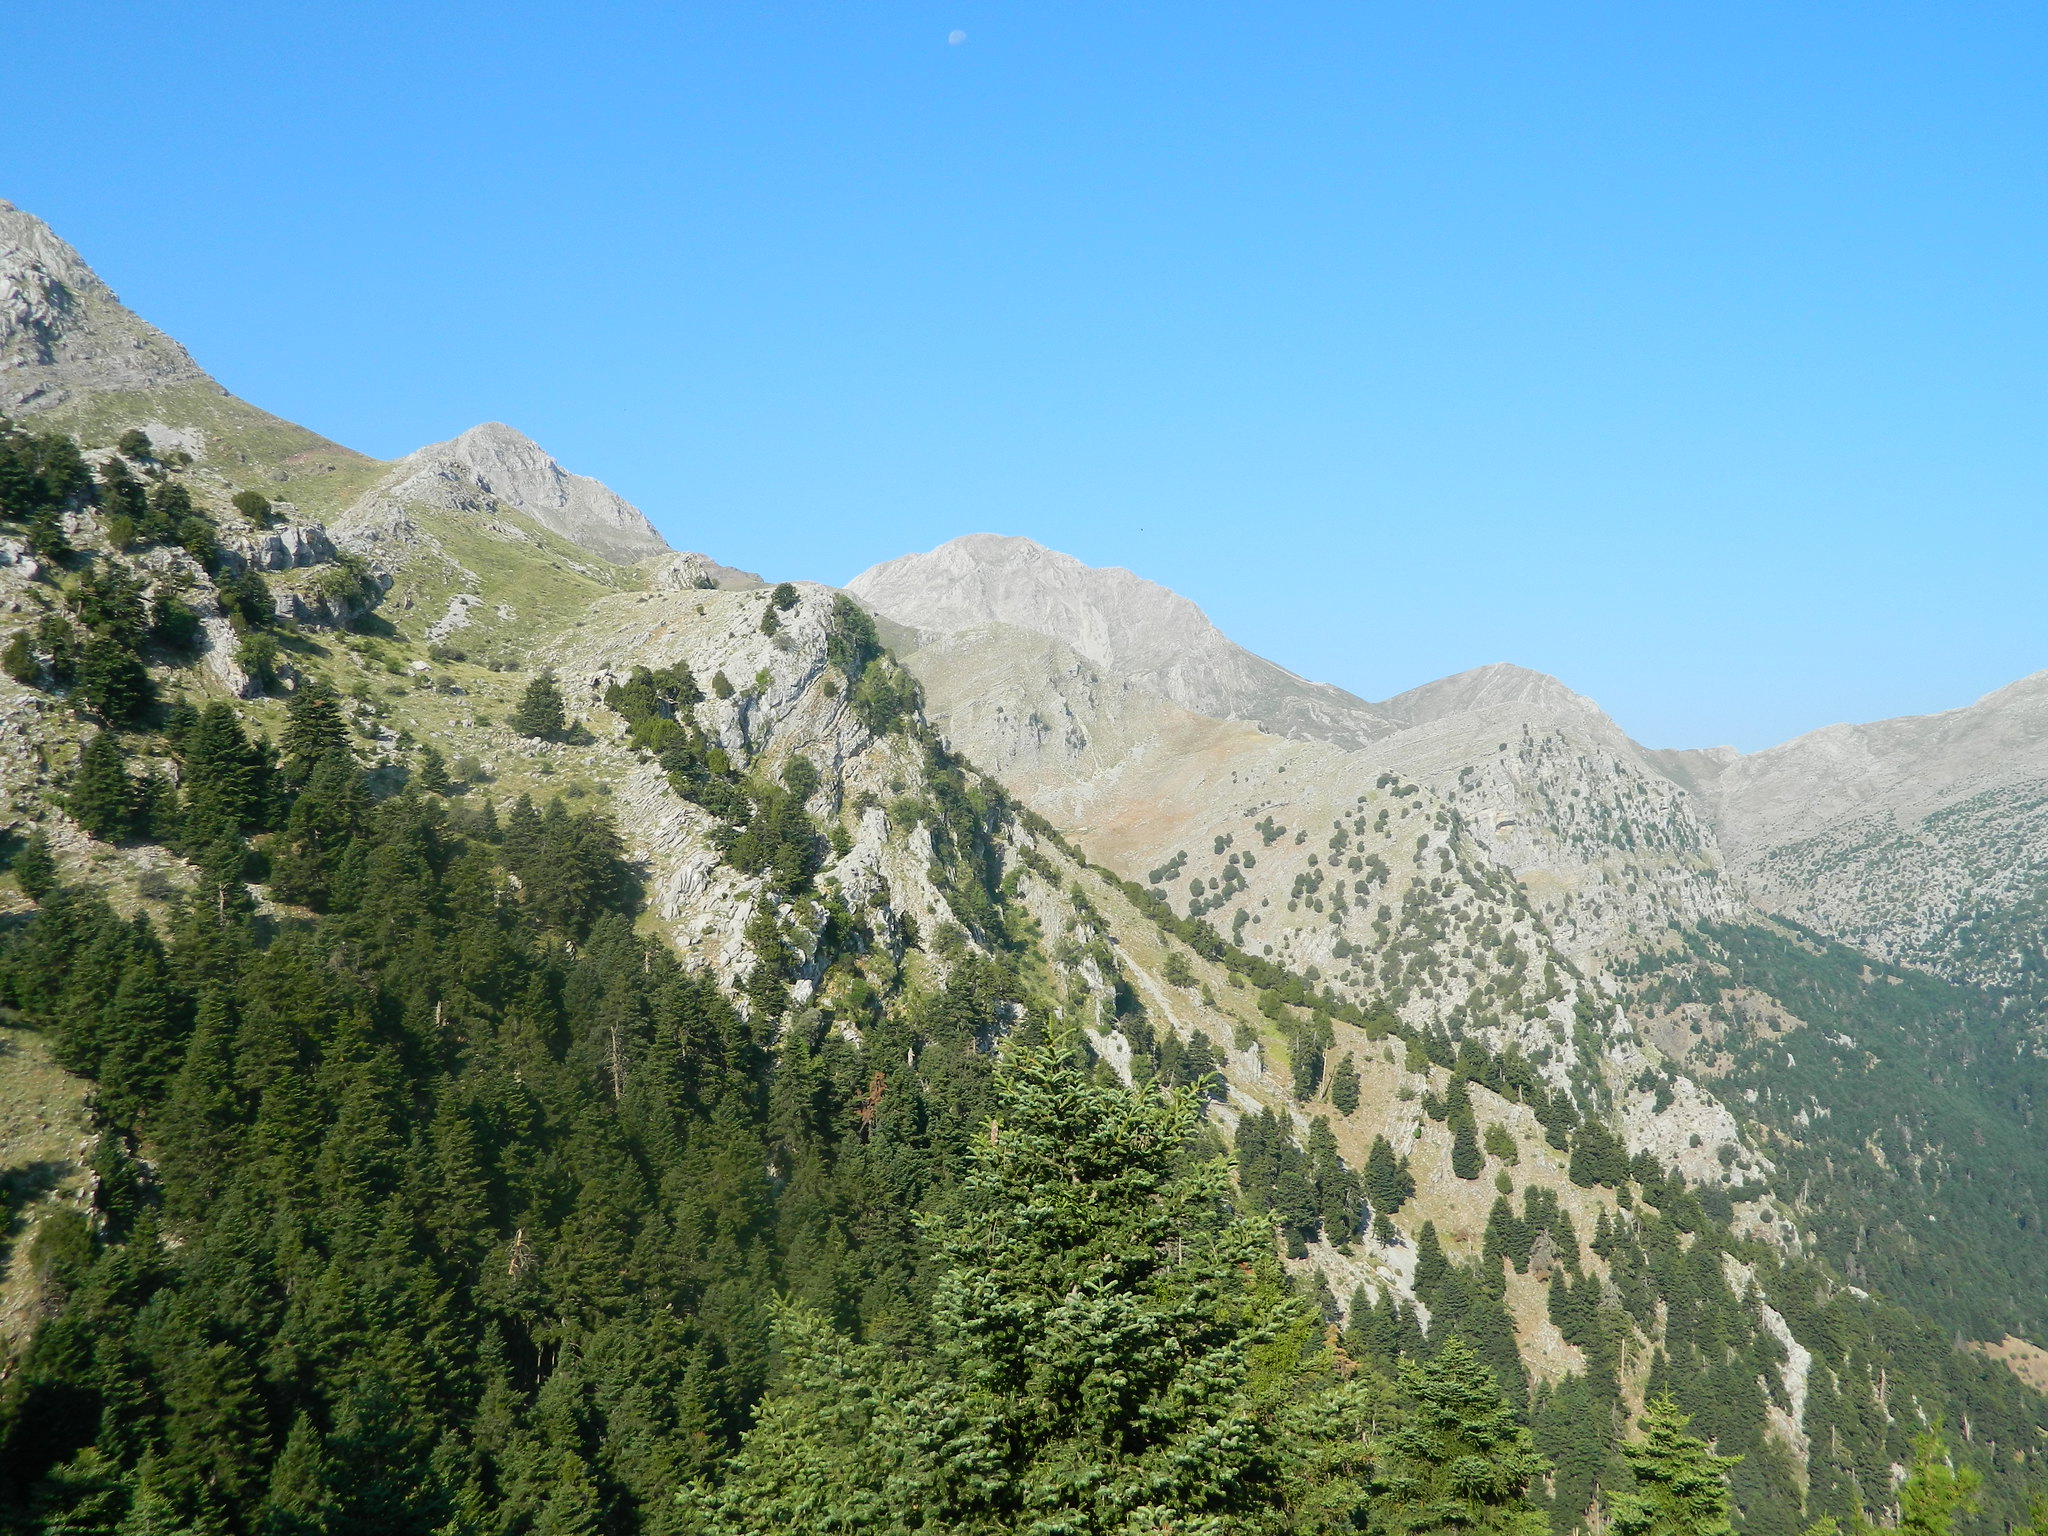 Ε.Ο.Σ. Καλαμάτας: Ανάβαση στον Ερύμανθο (κορυφή Ωλενός 2.224μ.)